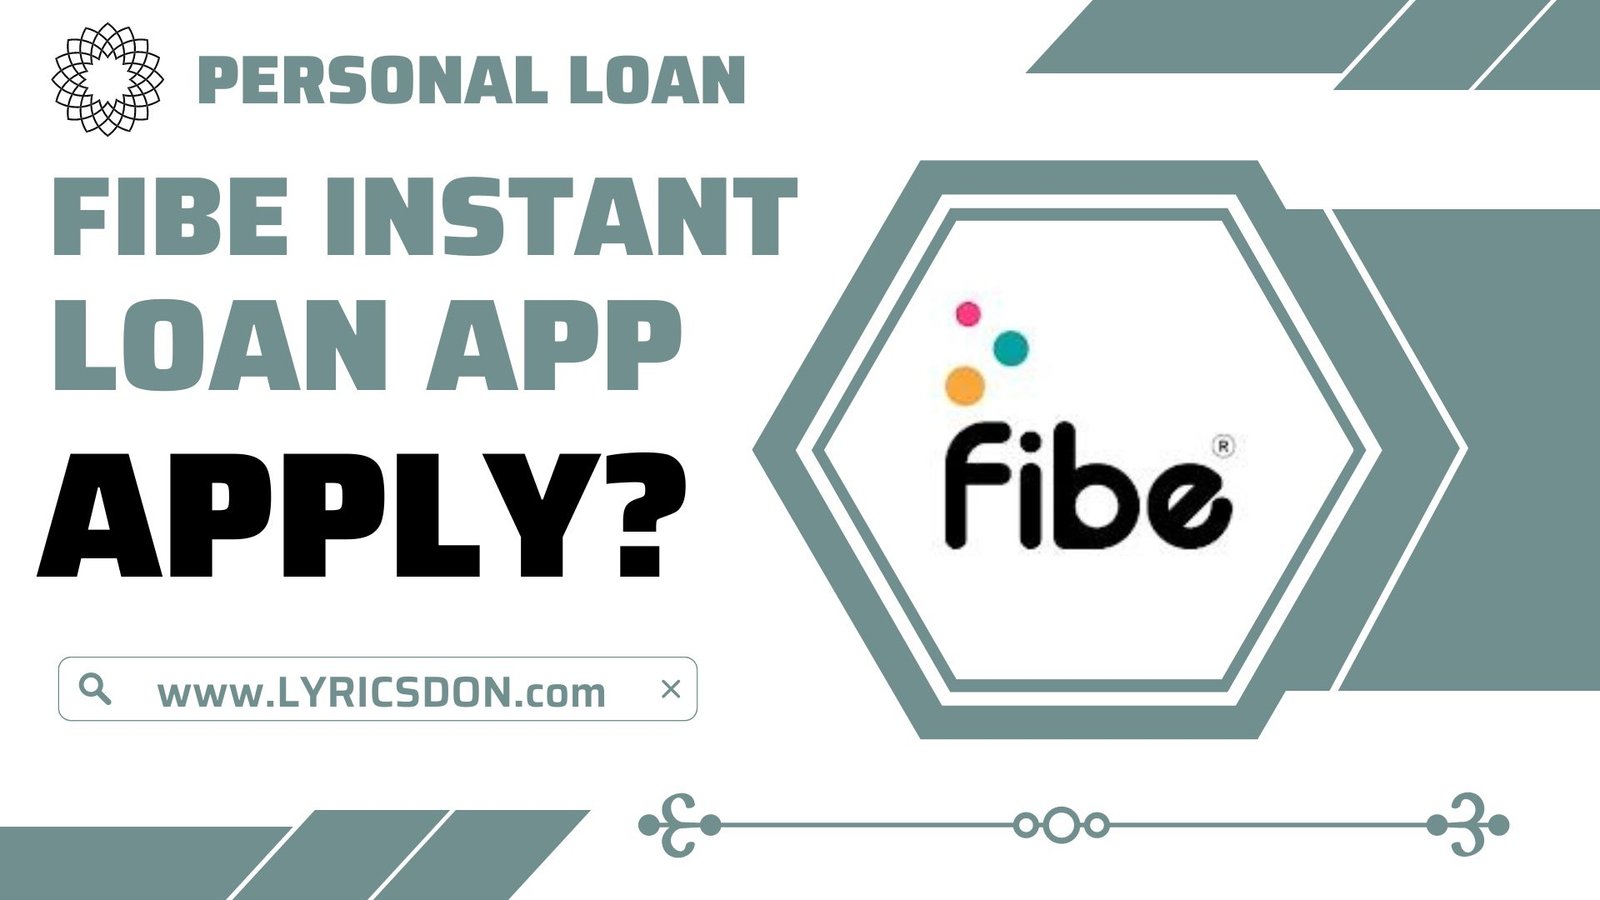 Fibe Loan App से लोन कैसे लें?